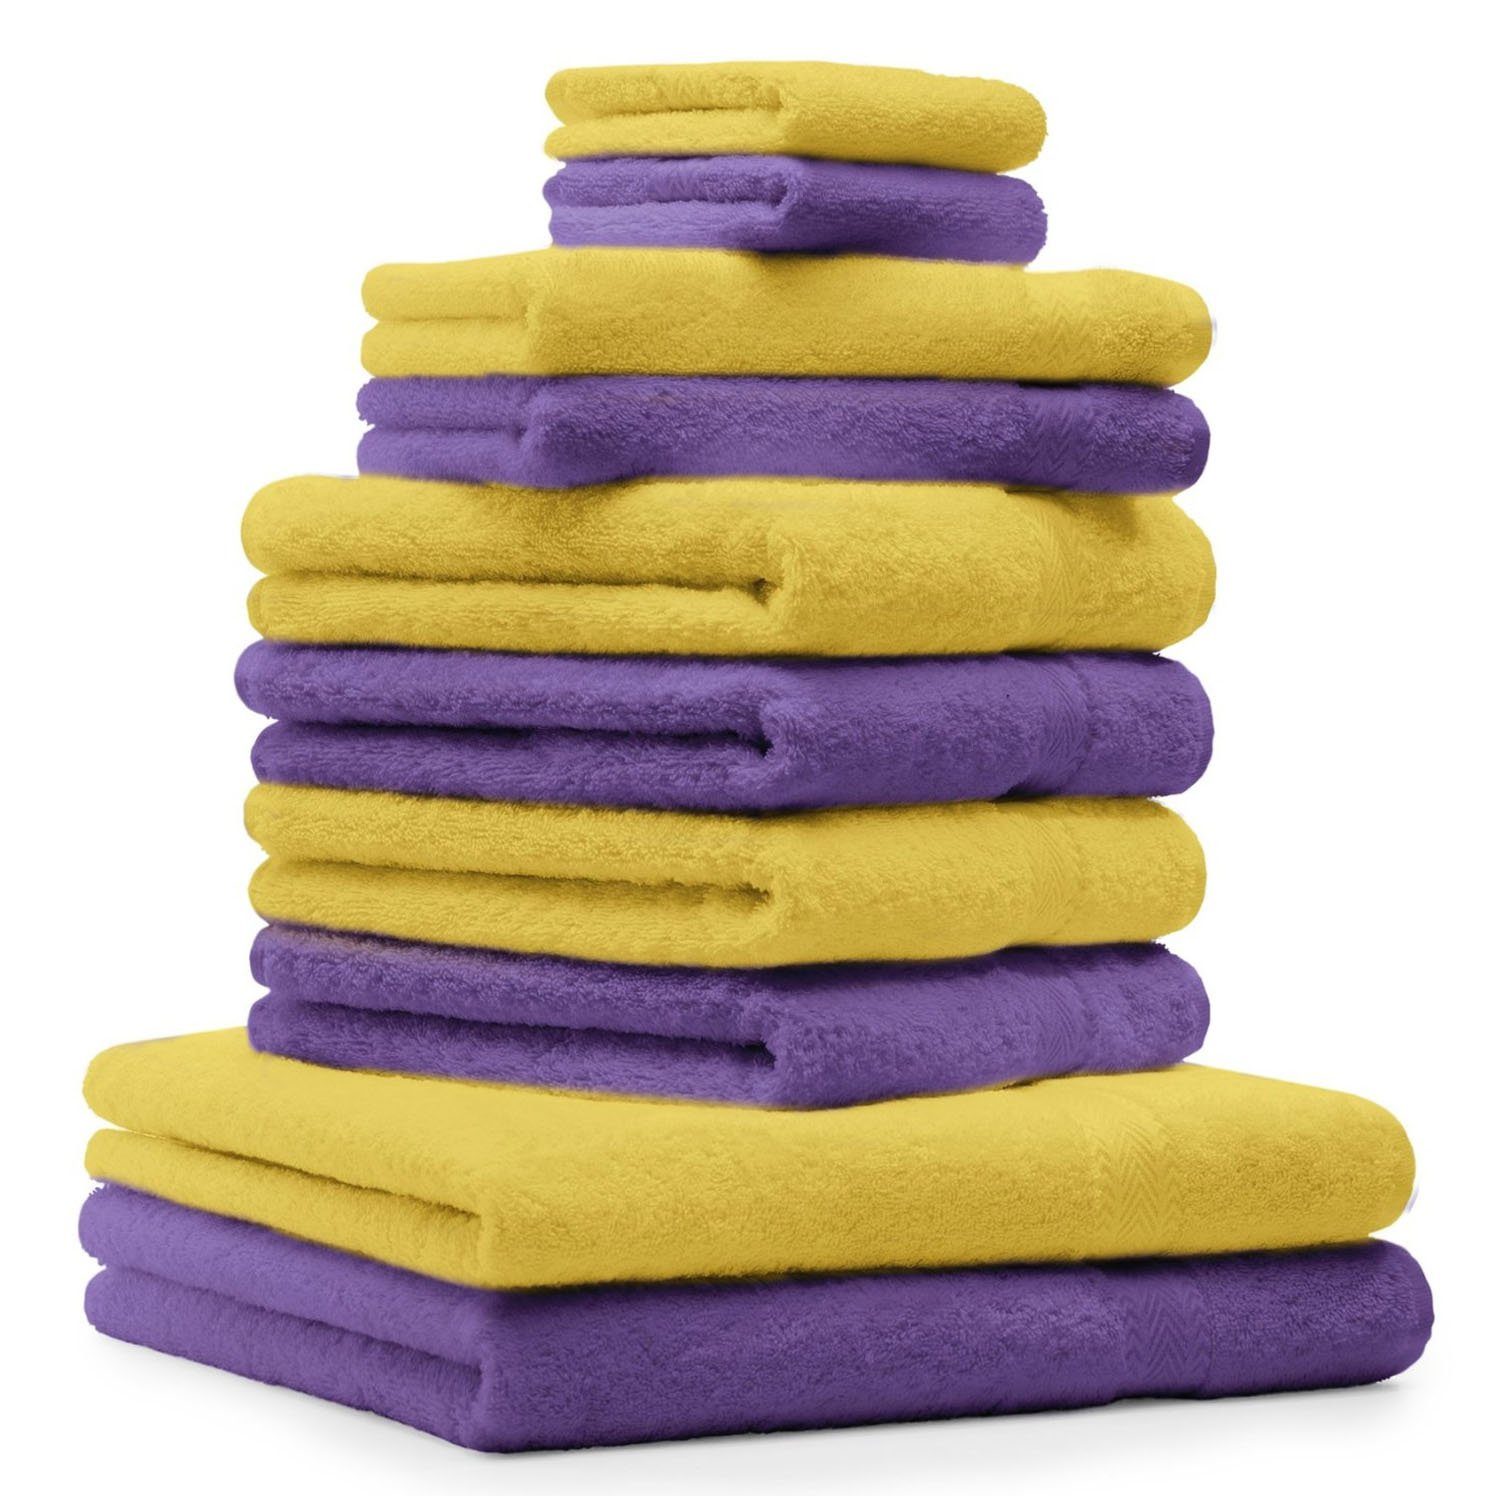 Betz Handtuch Set 10-TLG. Handtuch-Set Premium Gelb & Lila, 100% Baumwolle, (10-tlg) | Handtuch-Sets